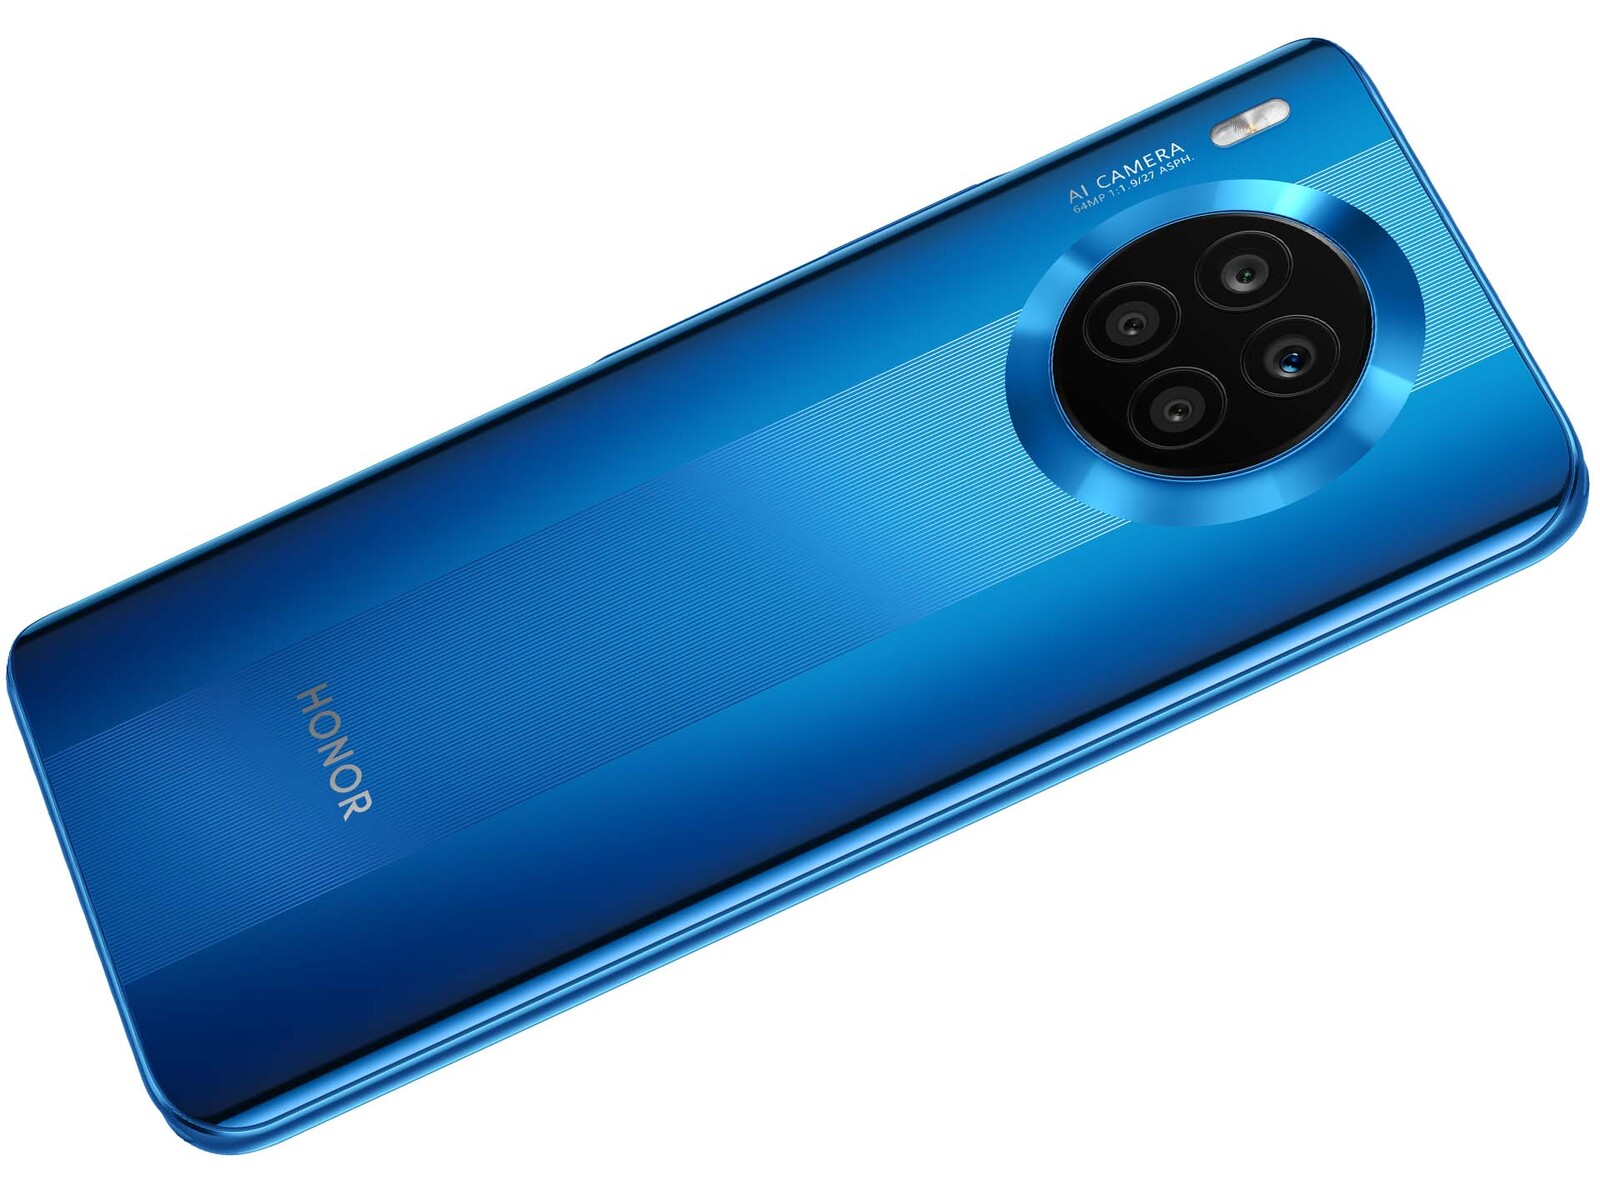 Probamos el Honor 50: el primer móvil de la empresa sin Huawei